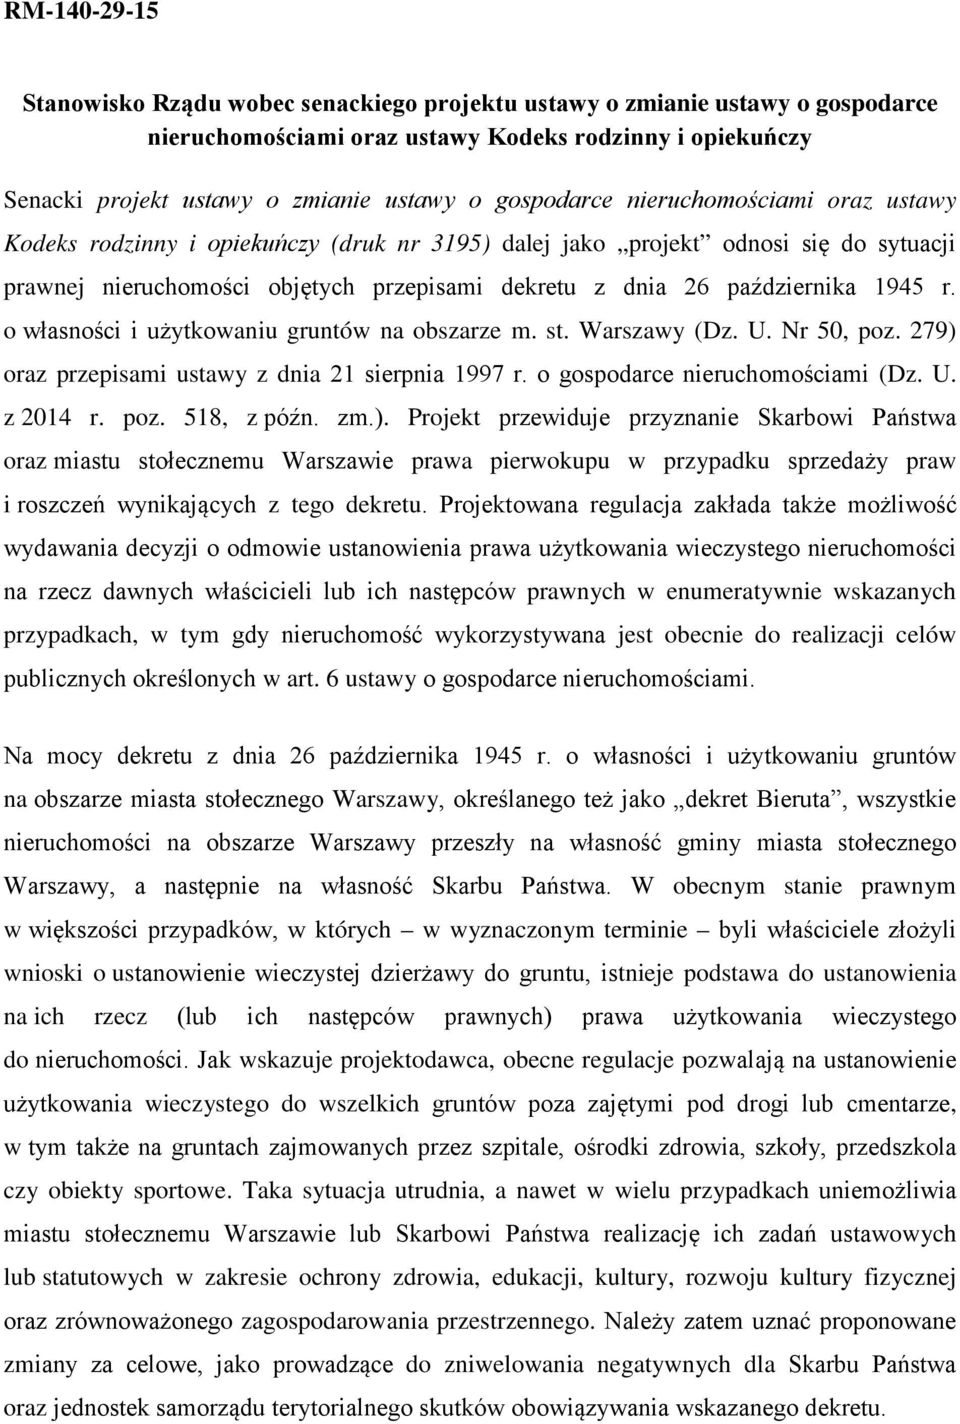 1945 r. o własności i użytkowaniu gruntów na obszarze m. st. Warszawy (Dz. U. Nr 50, poz. 279) oraz przepisami ustawy z dnia 21 sierpnia 1997 r. o gospodarce nieruchomościami (Dz. U. z 2014 r. poz. 518, z późn.